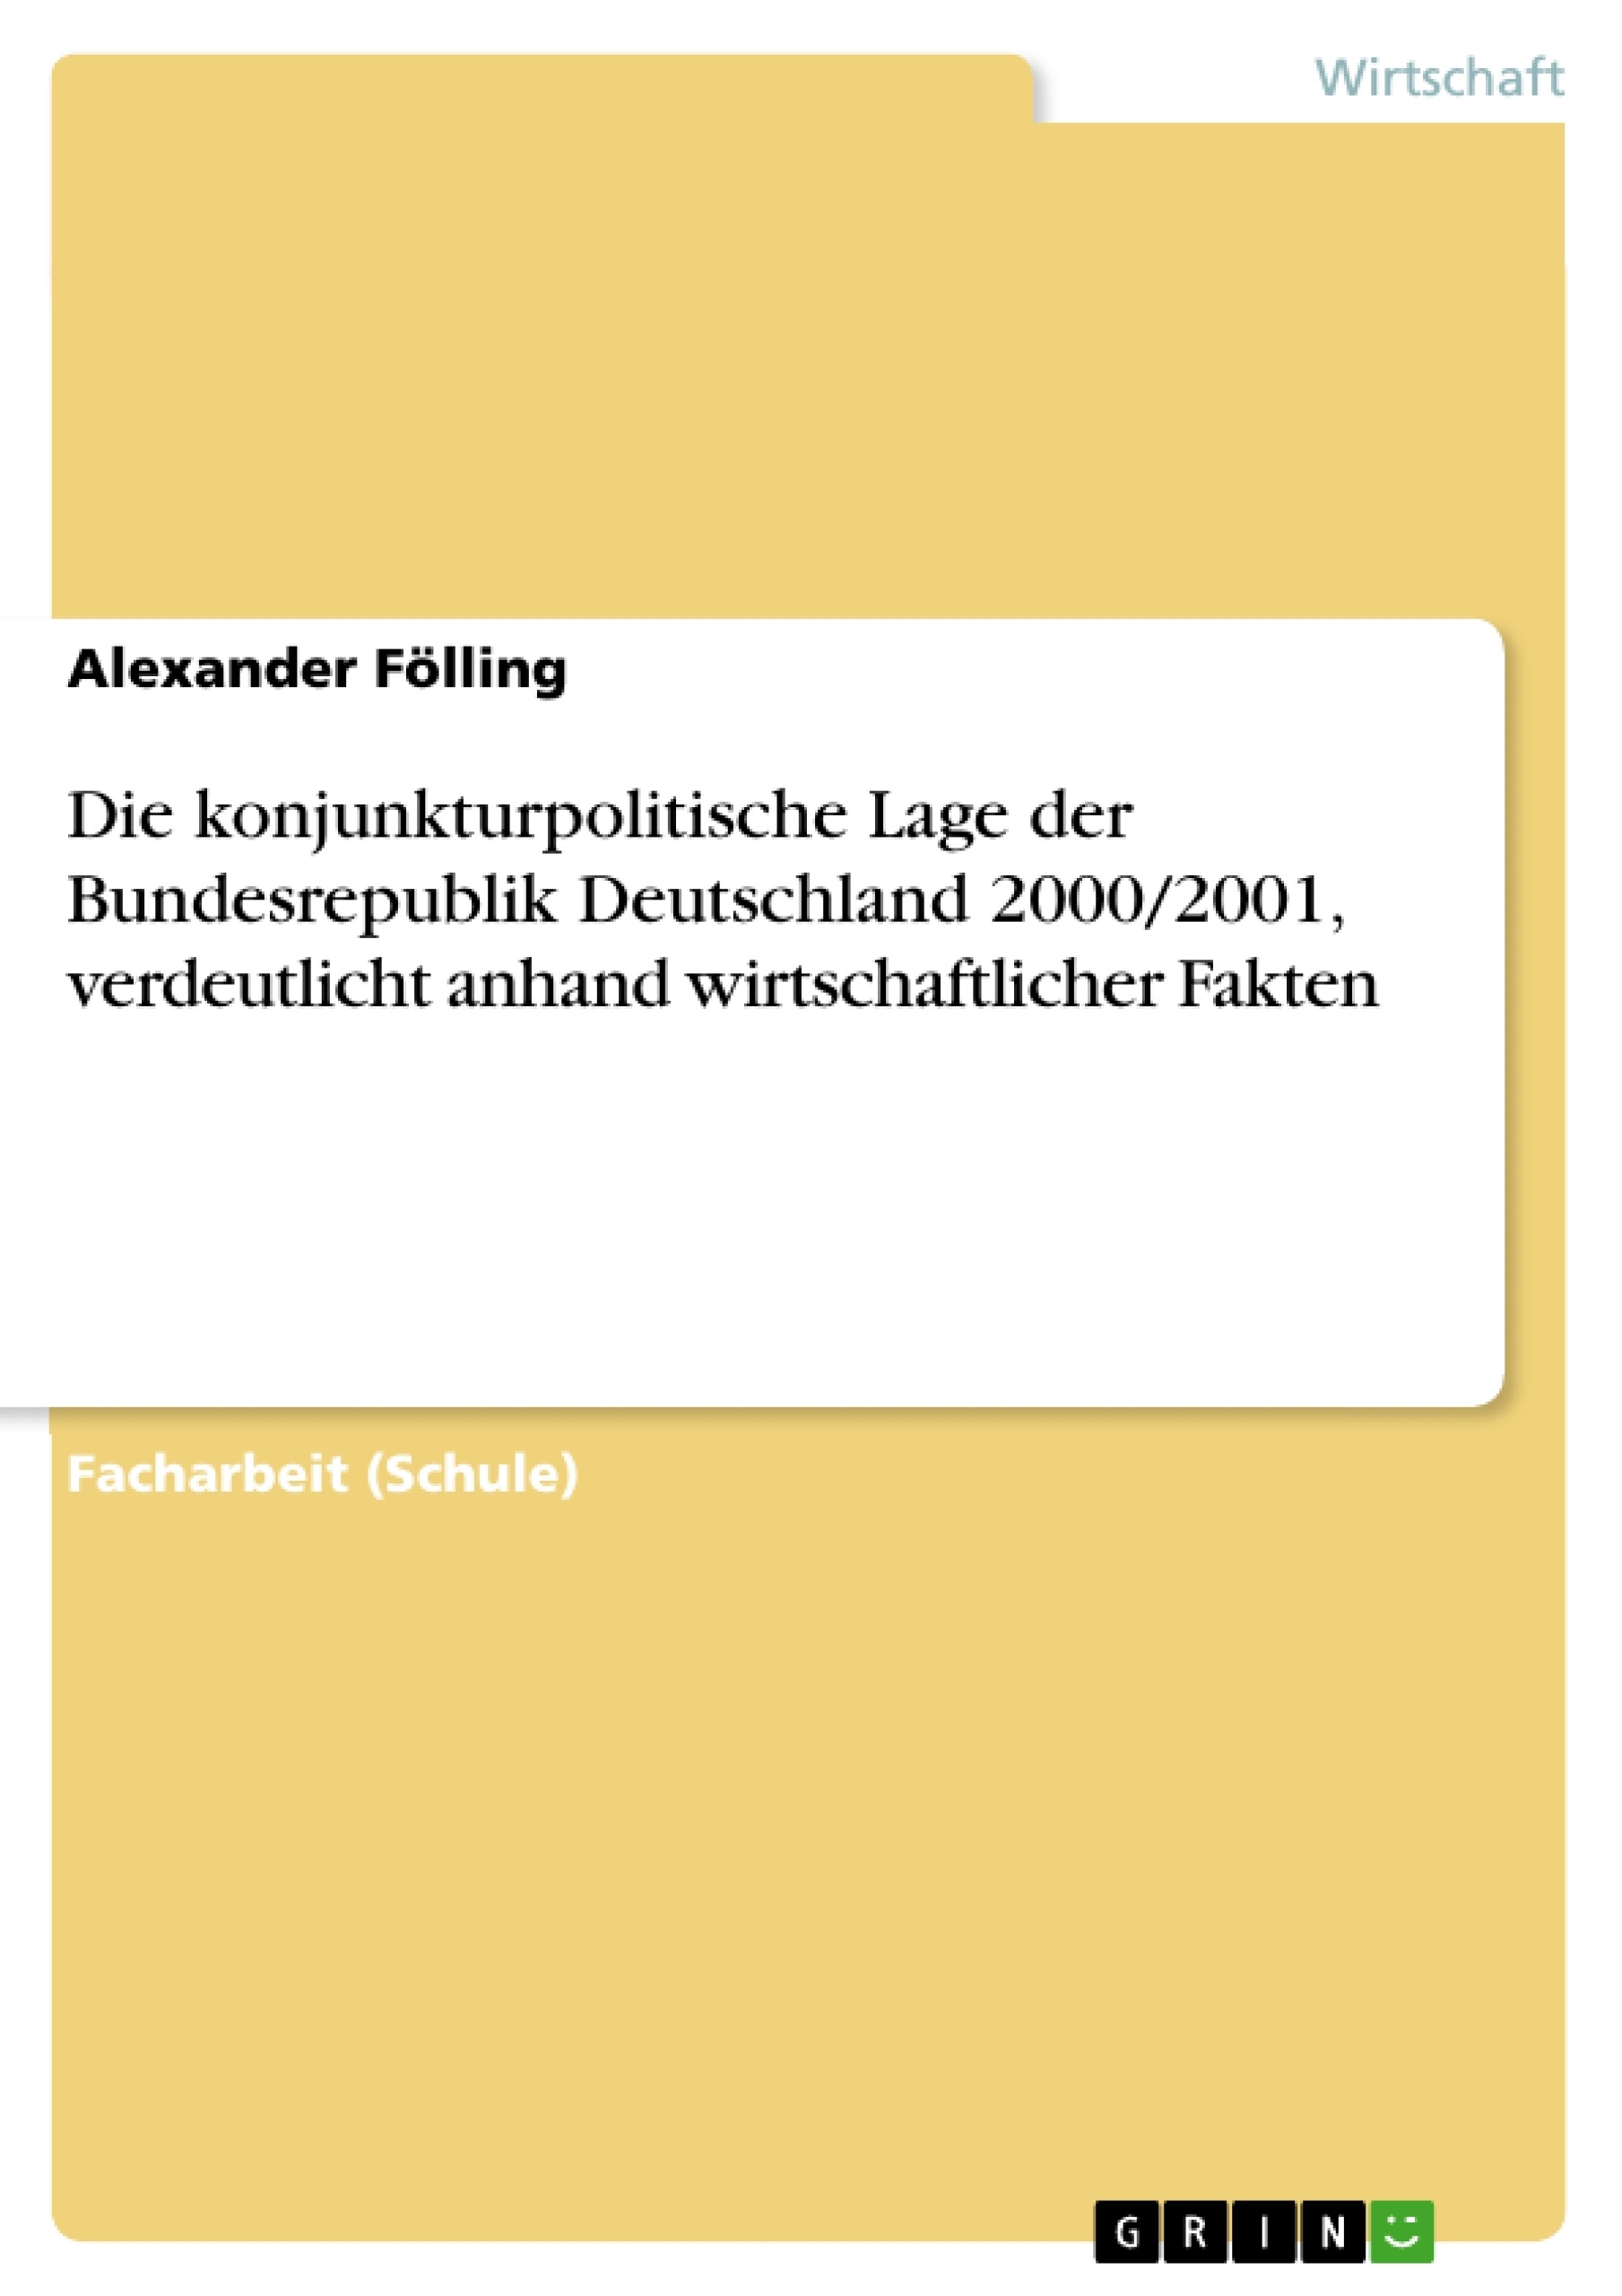 Titre: Die konjunkturpolitische Lage der Bundesrepublik Deutschland 2000/2001, verdeutlicht anhand wirtschaftlicher Fakten